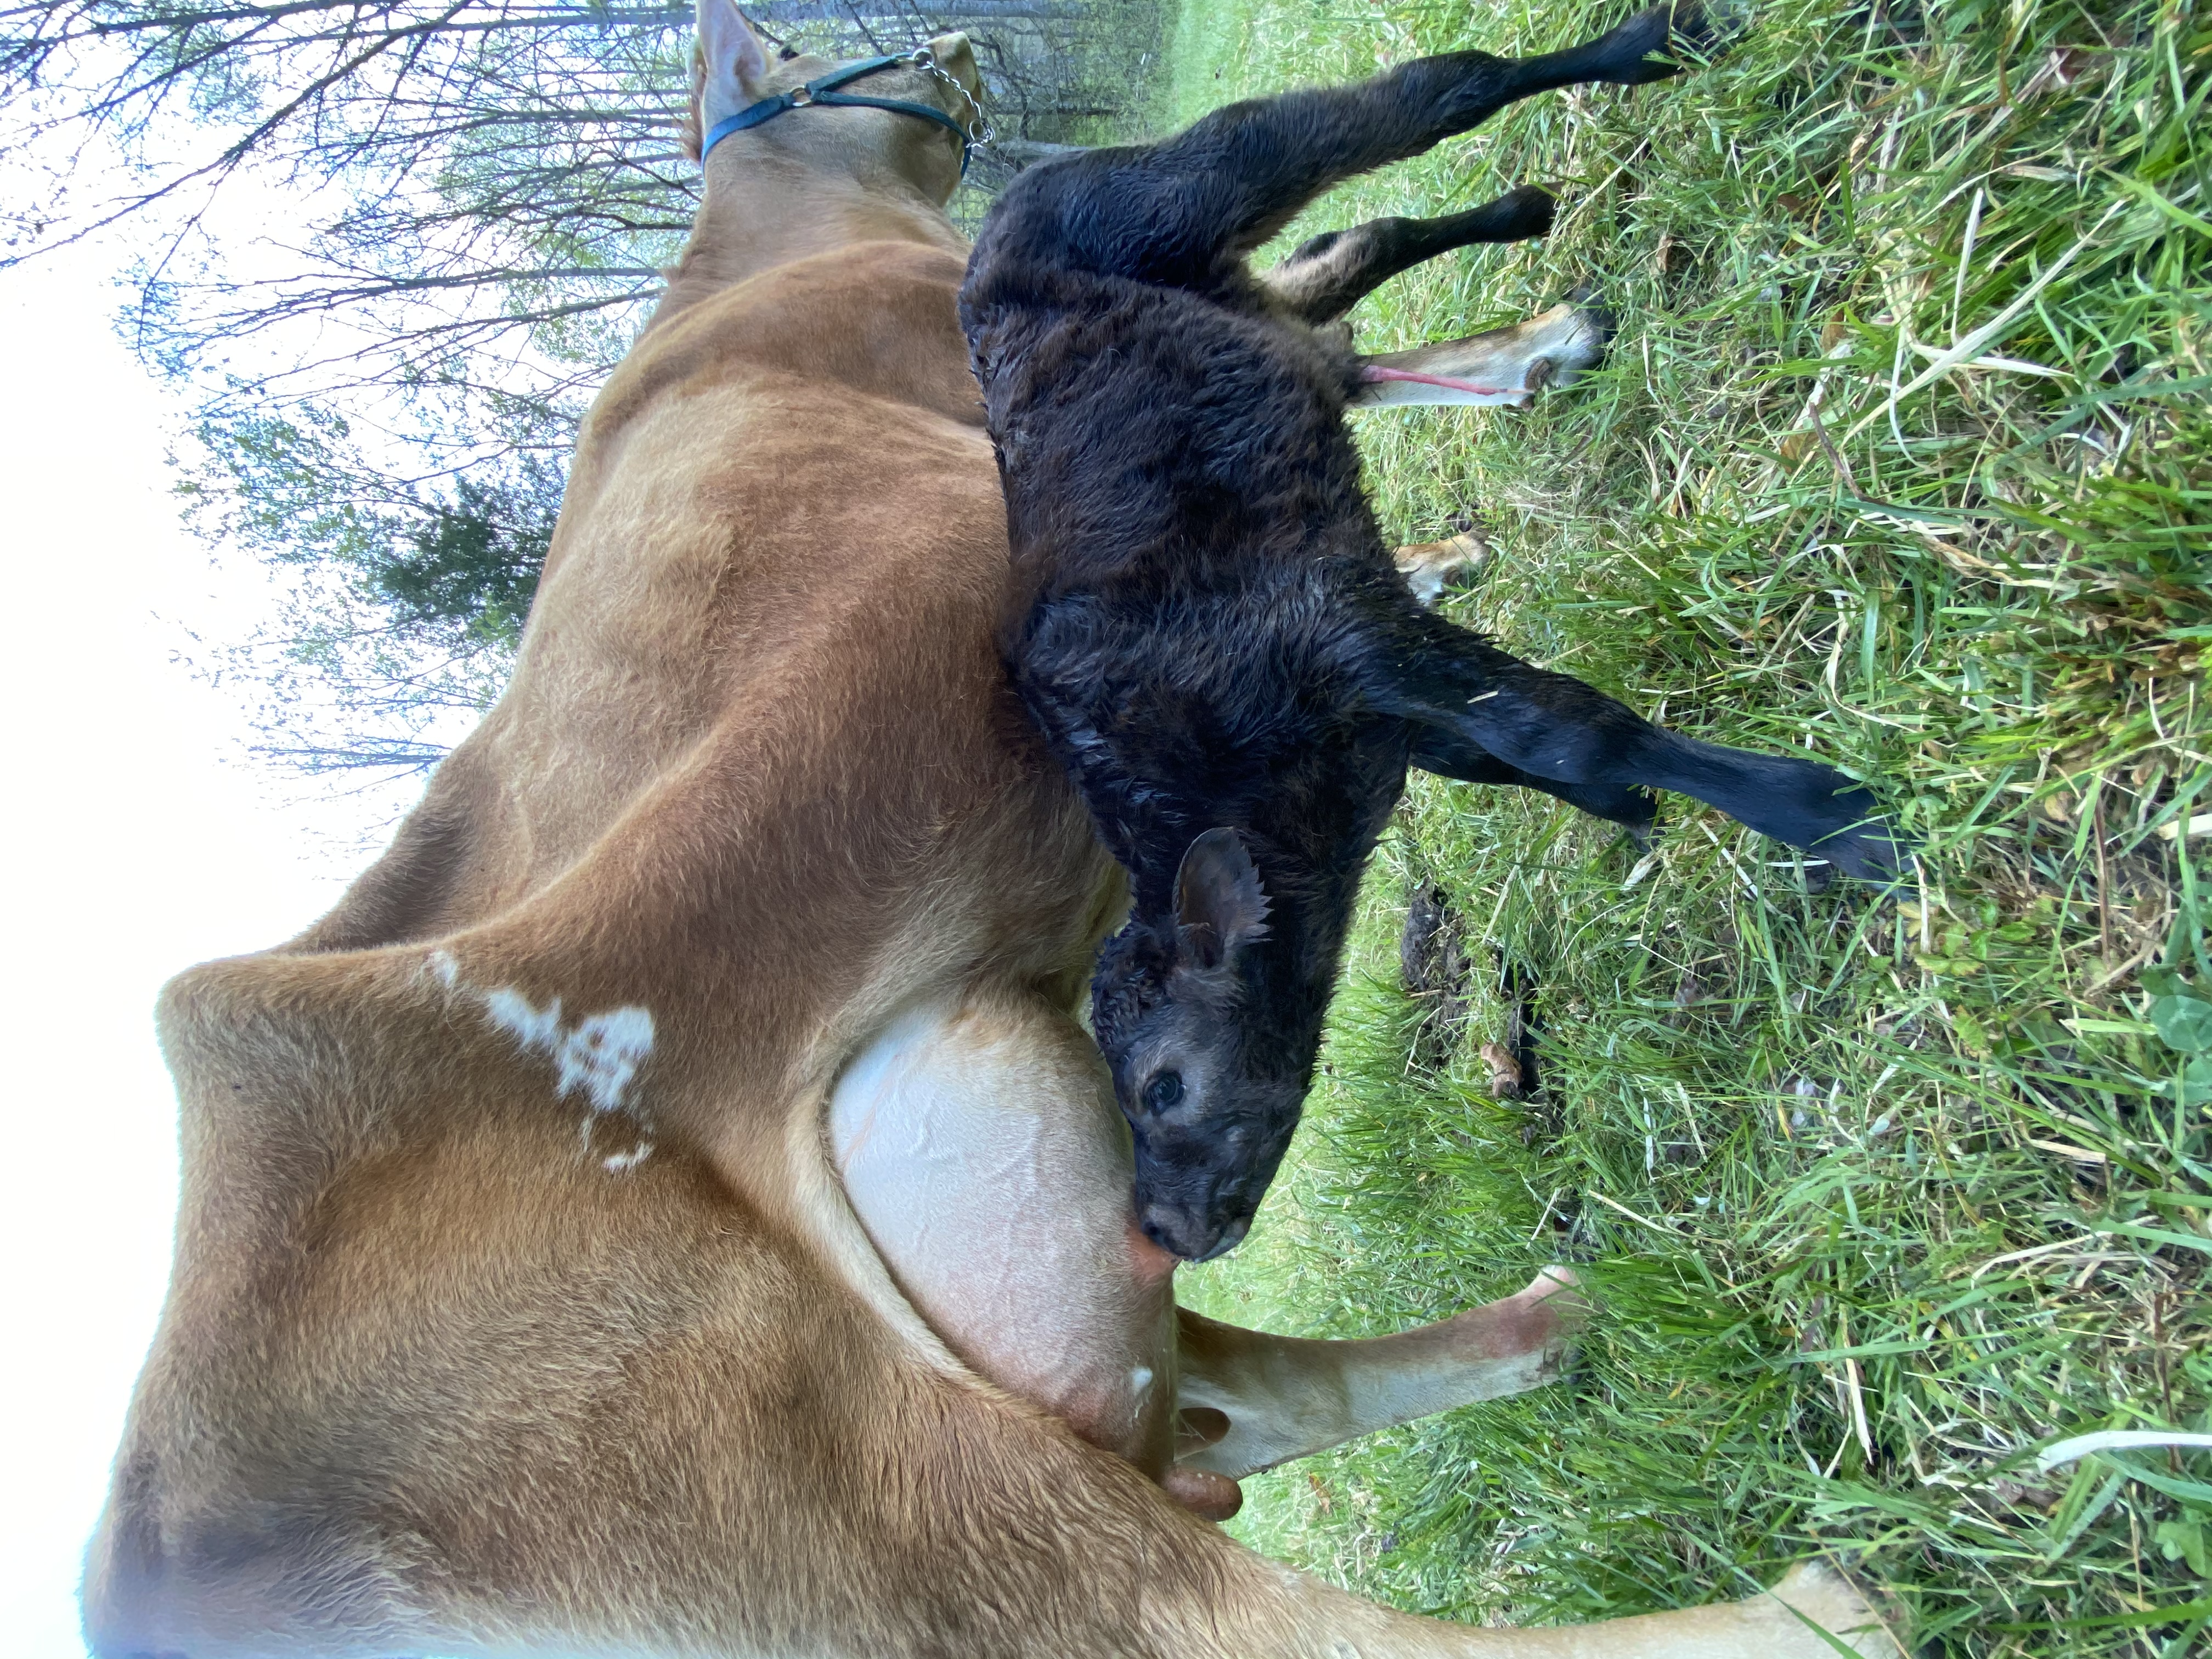 2020- Our first calf born on our TN farm